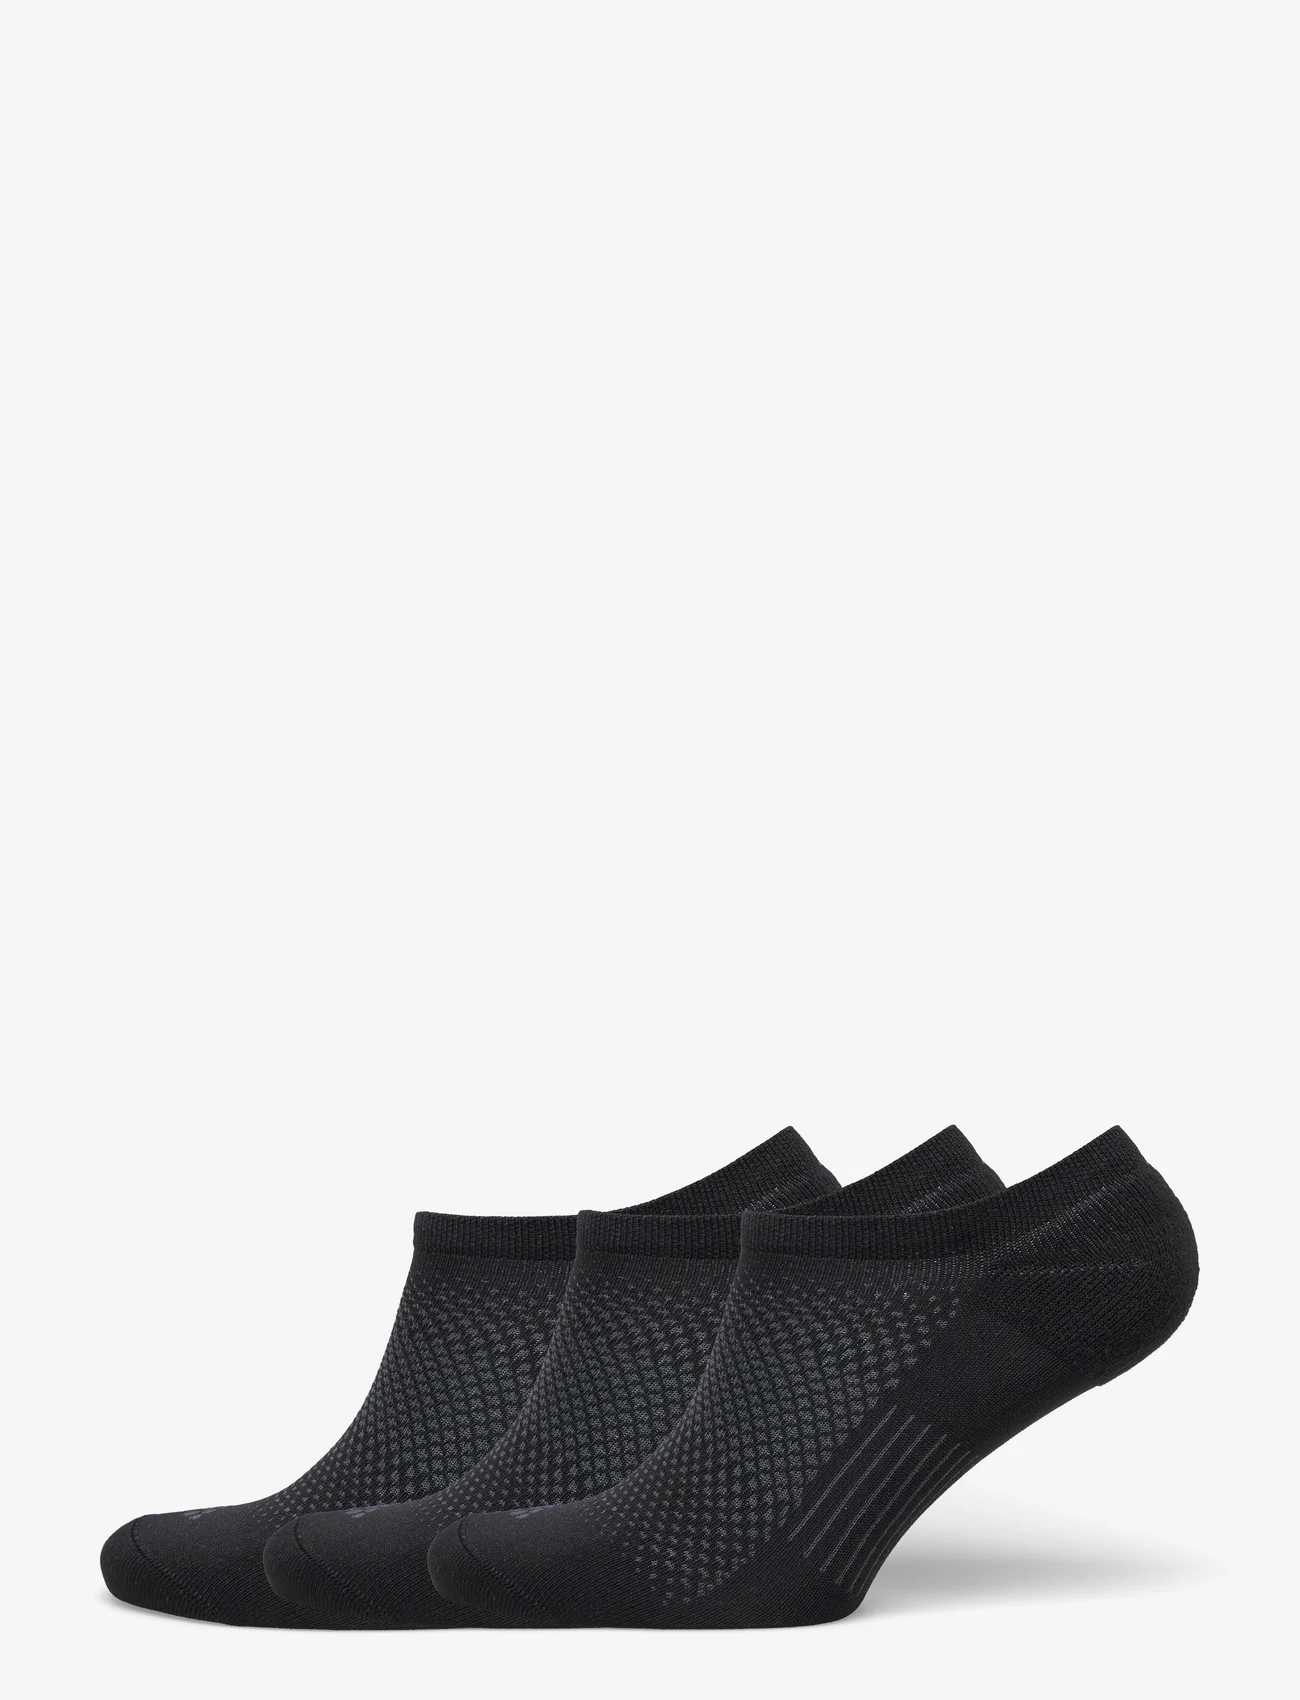 Craft - Core Dry Footies 3-Pack - najniższe ceny - black - 0